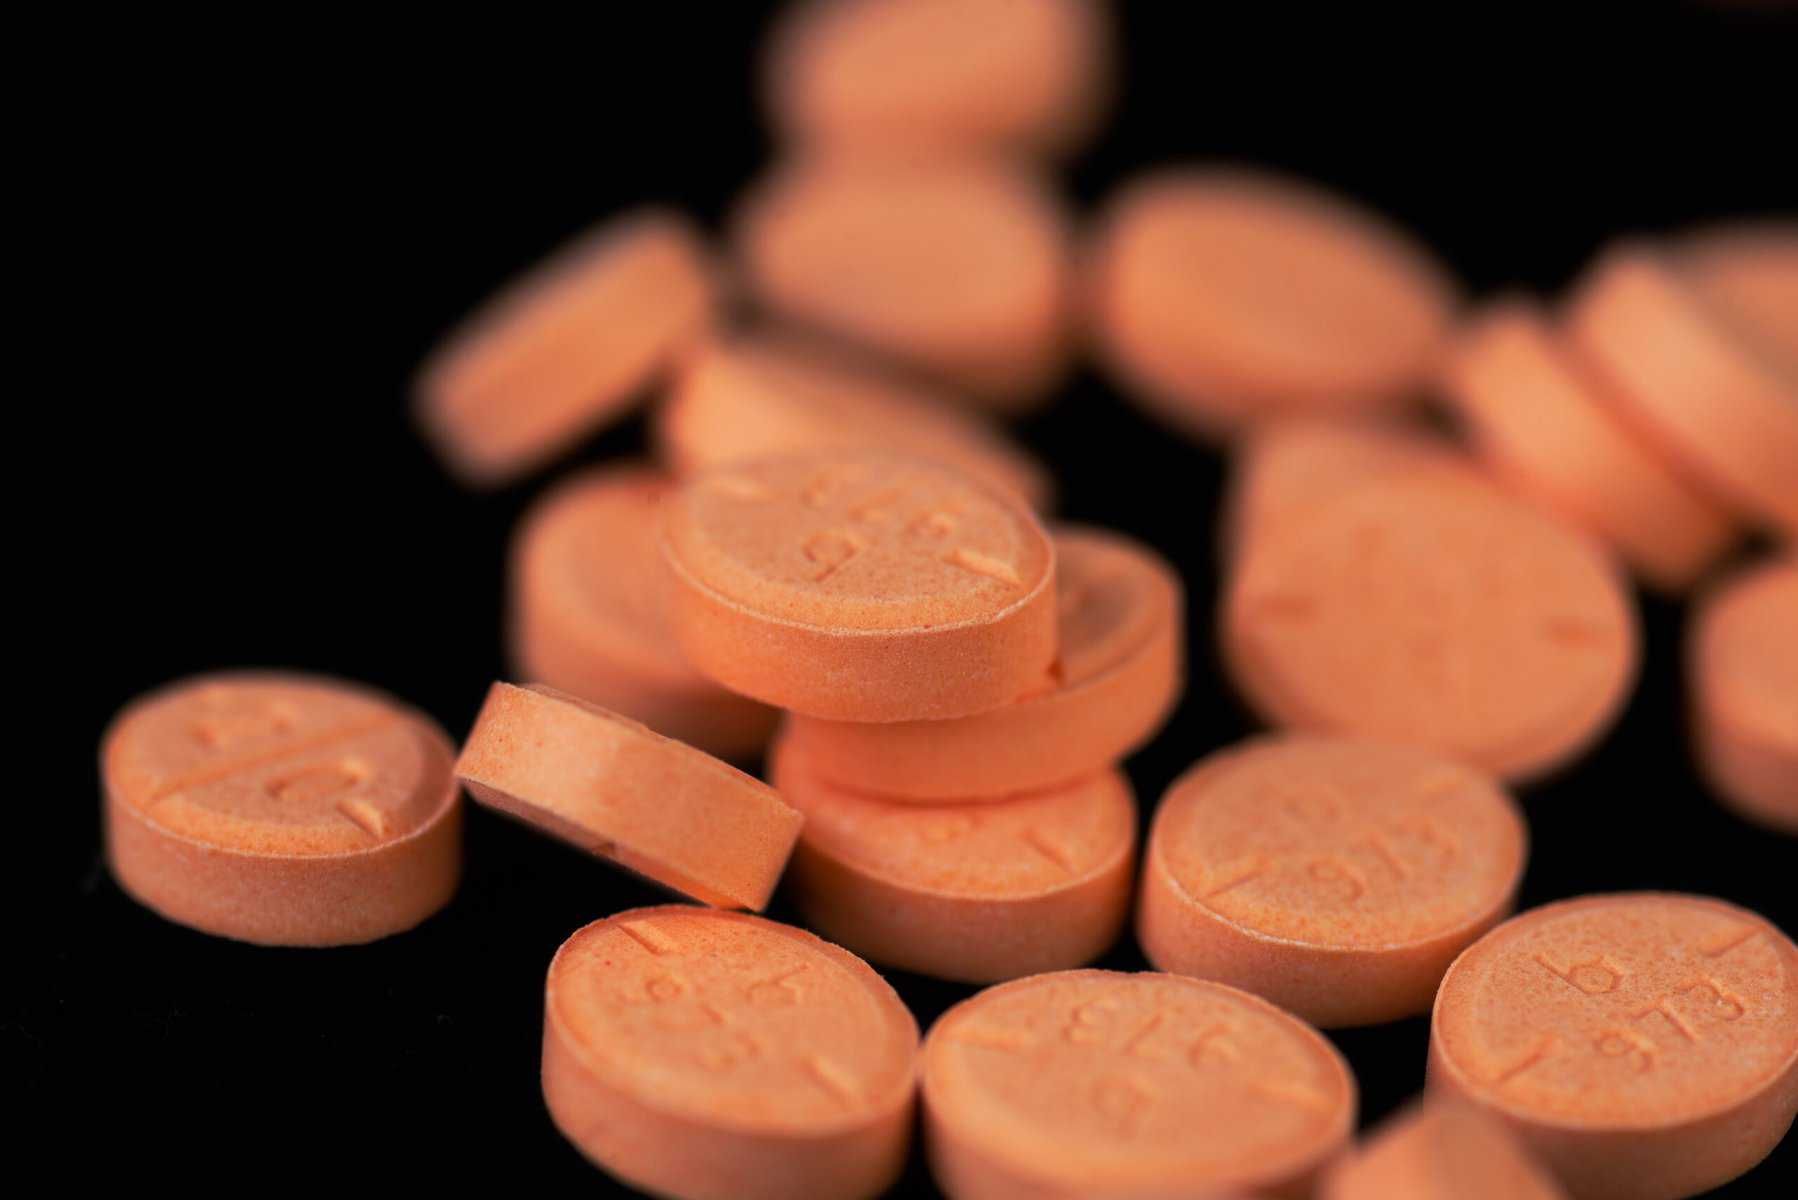 orange tablets of stimulants or smart drugs